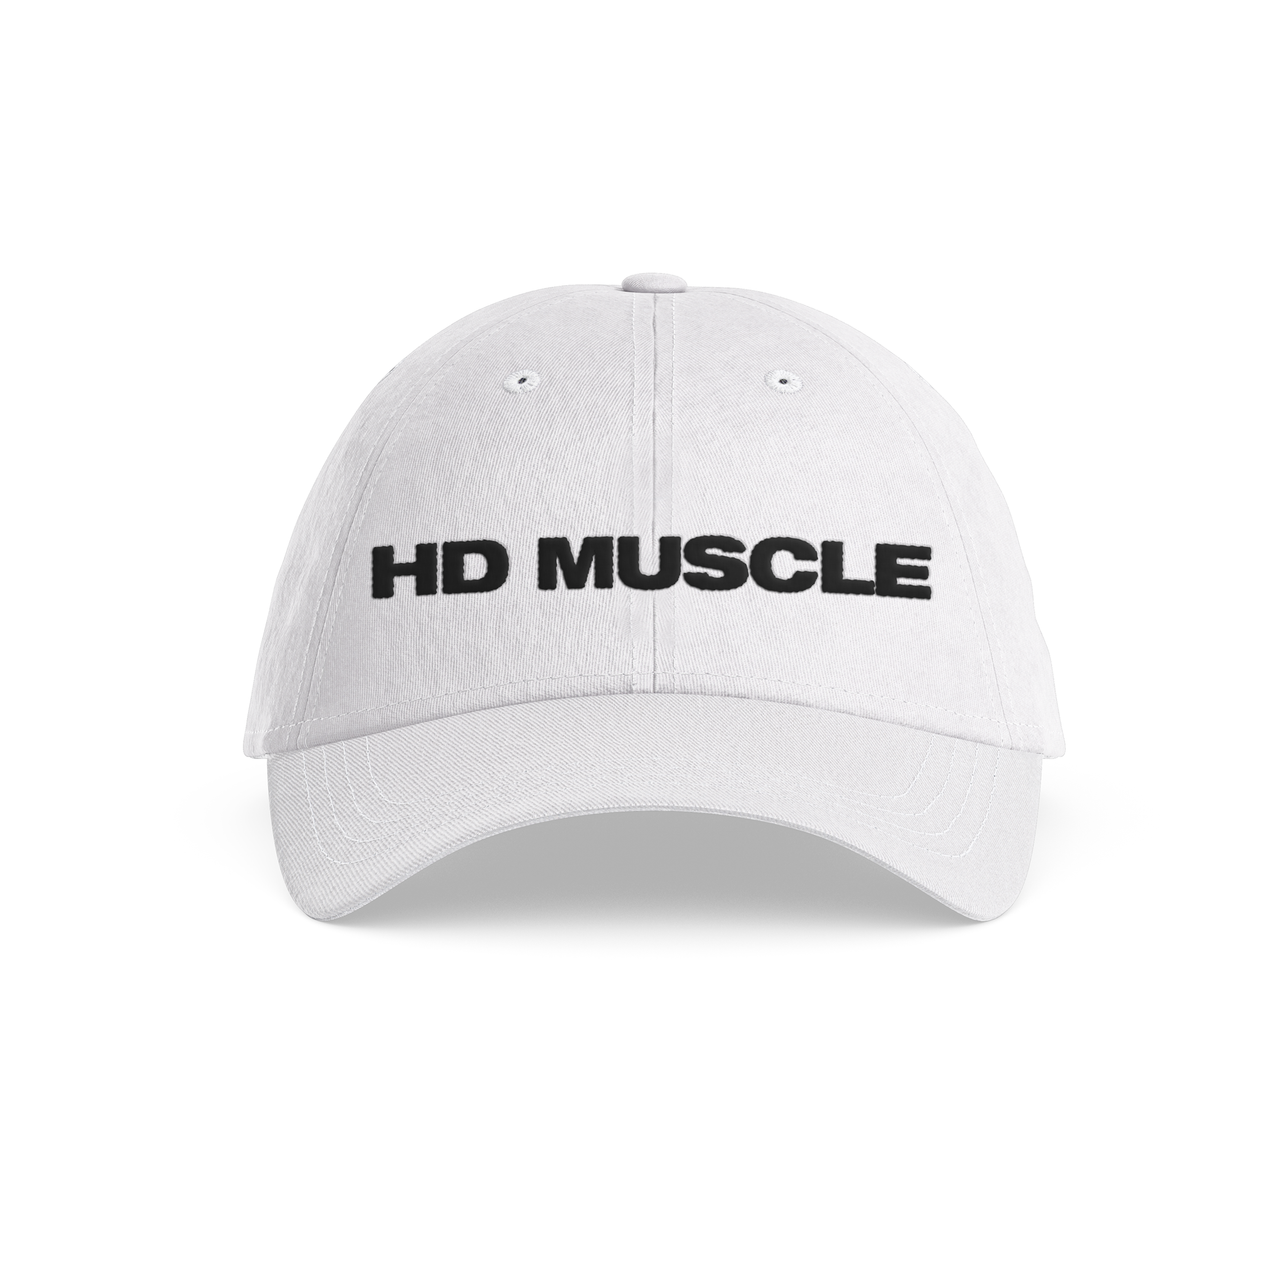 HD Muscle Dad Hat - HD MUSCLE CA